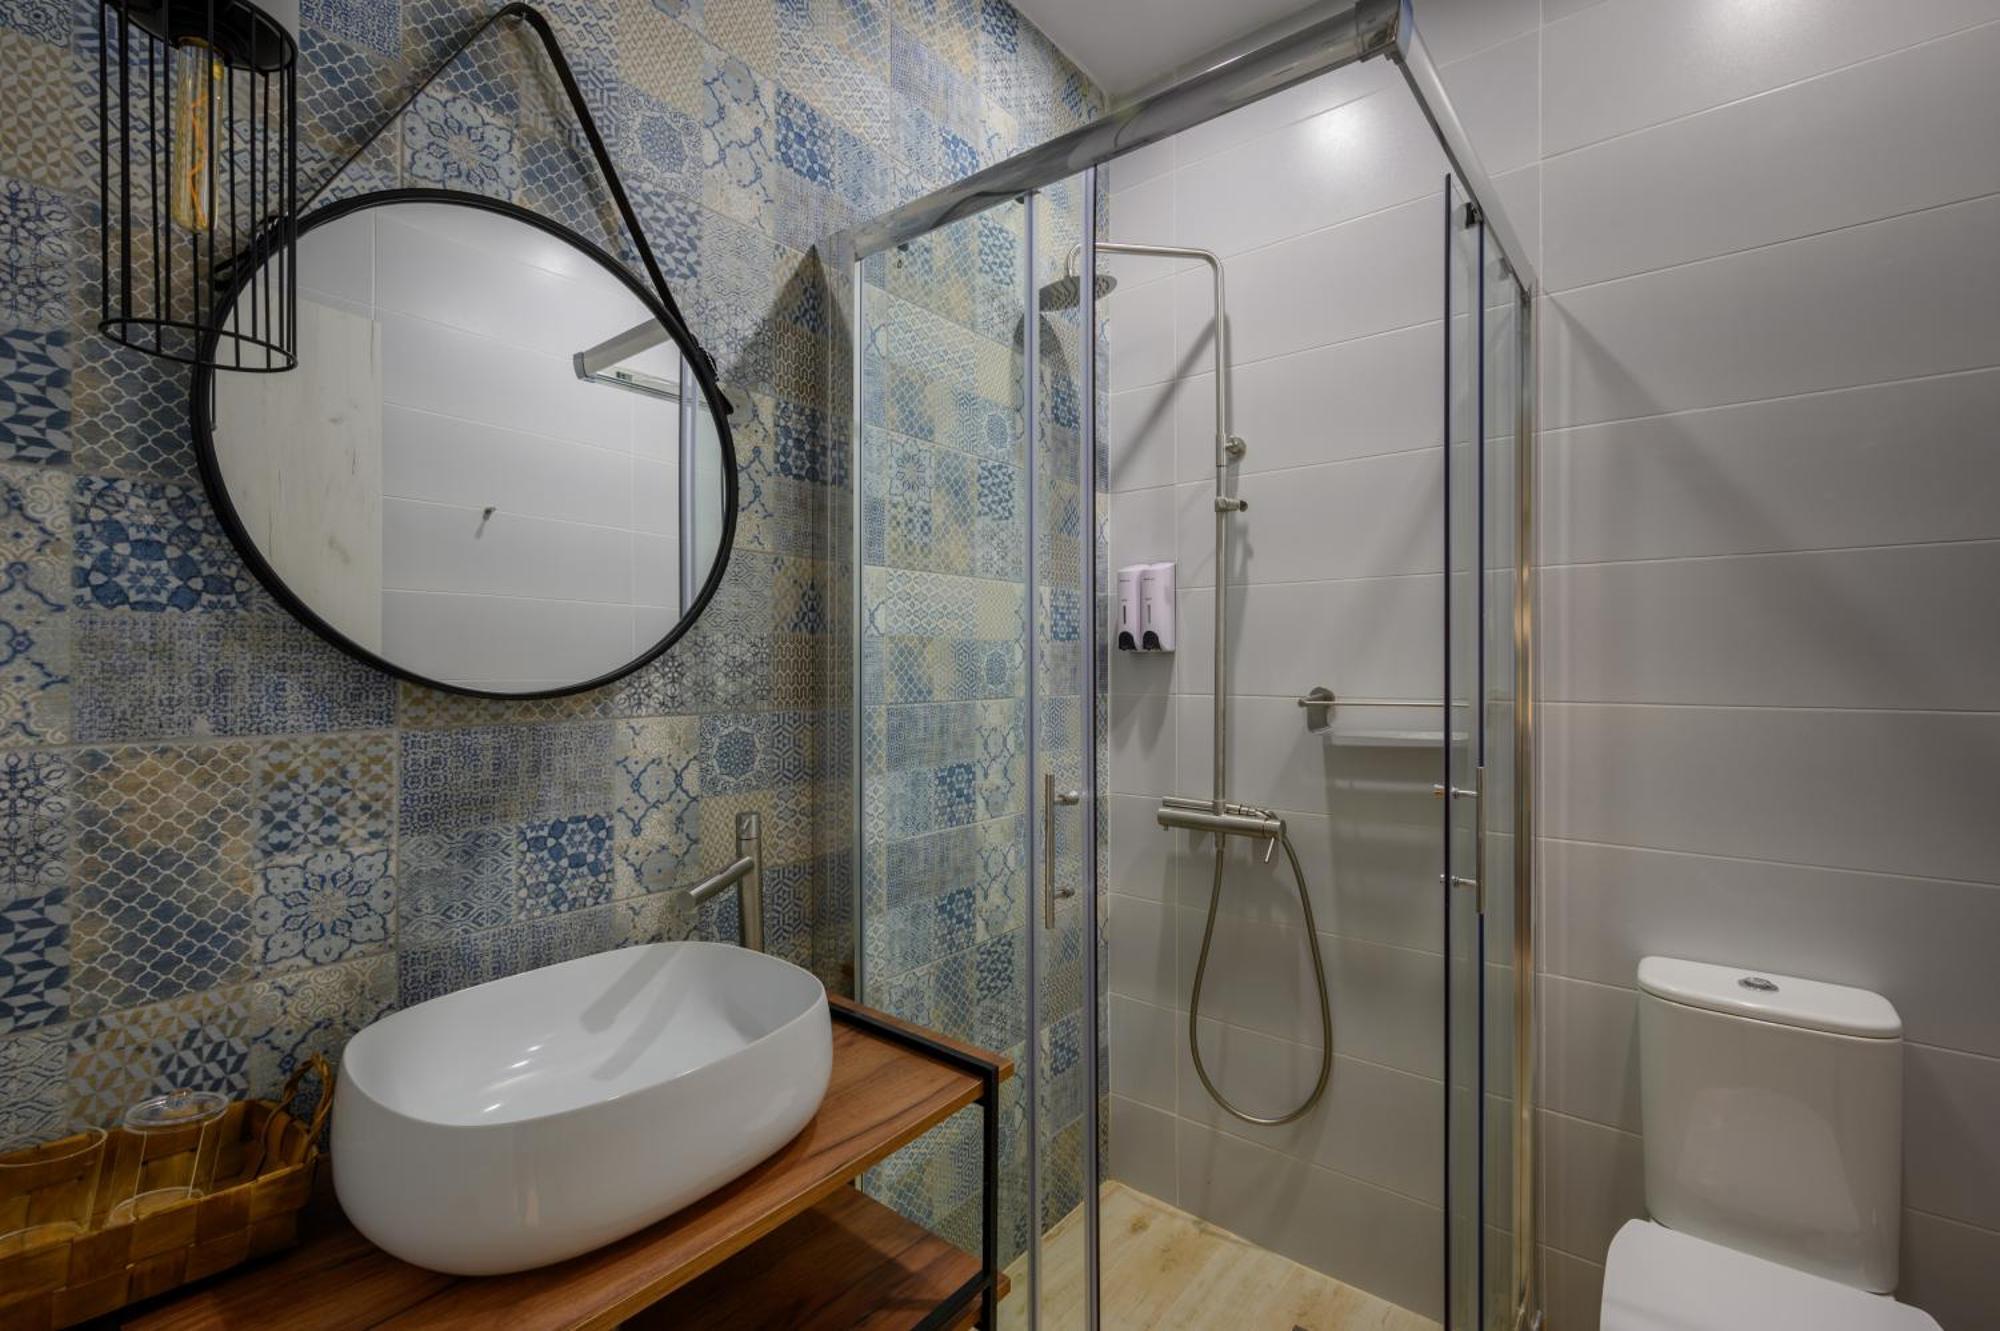 פילוס Vicanti Luxury Apartments מראה חיצוני תמונה